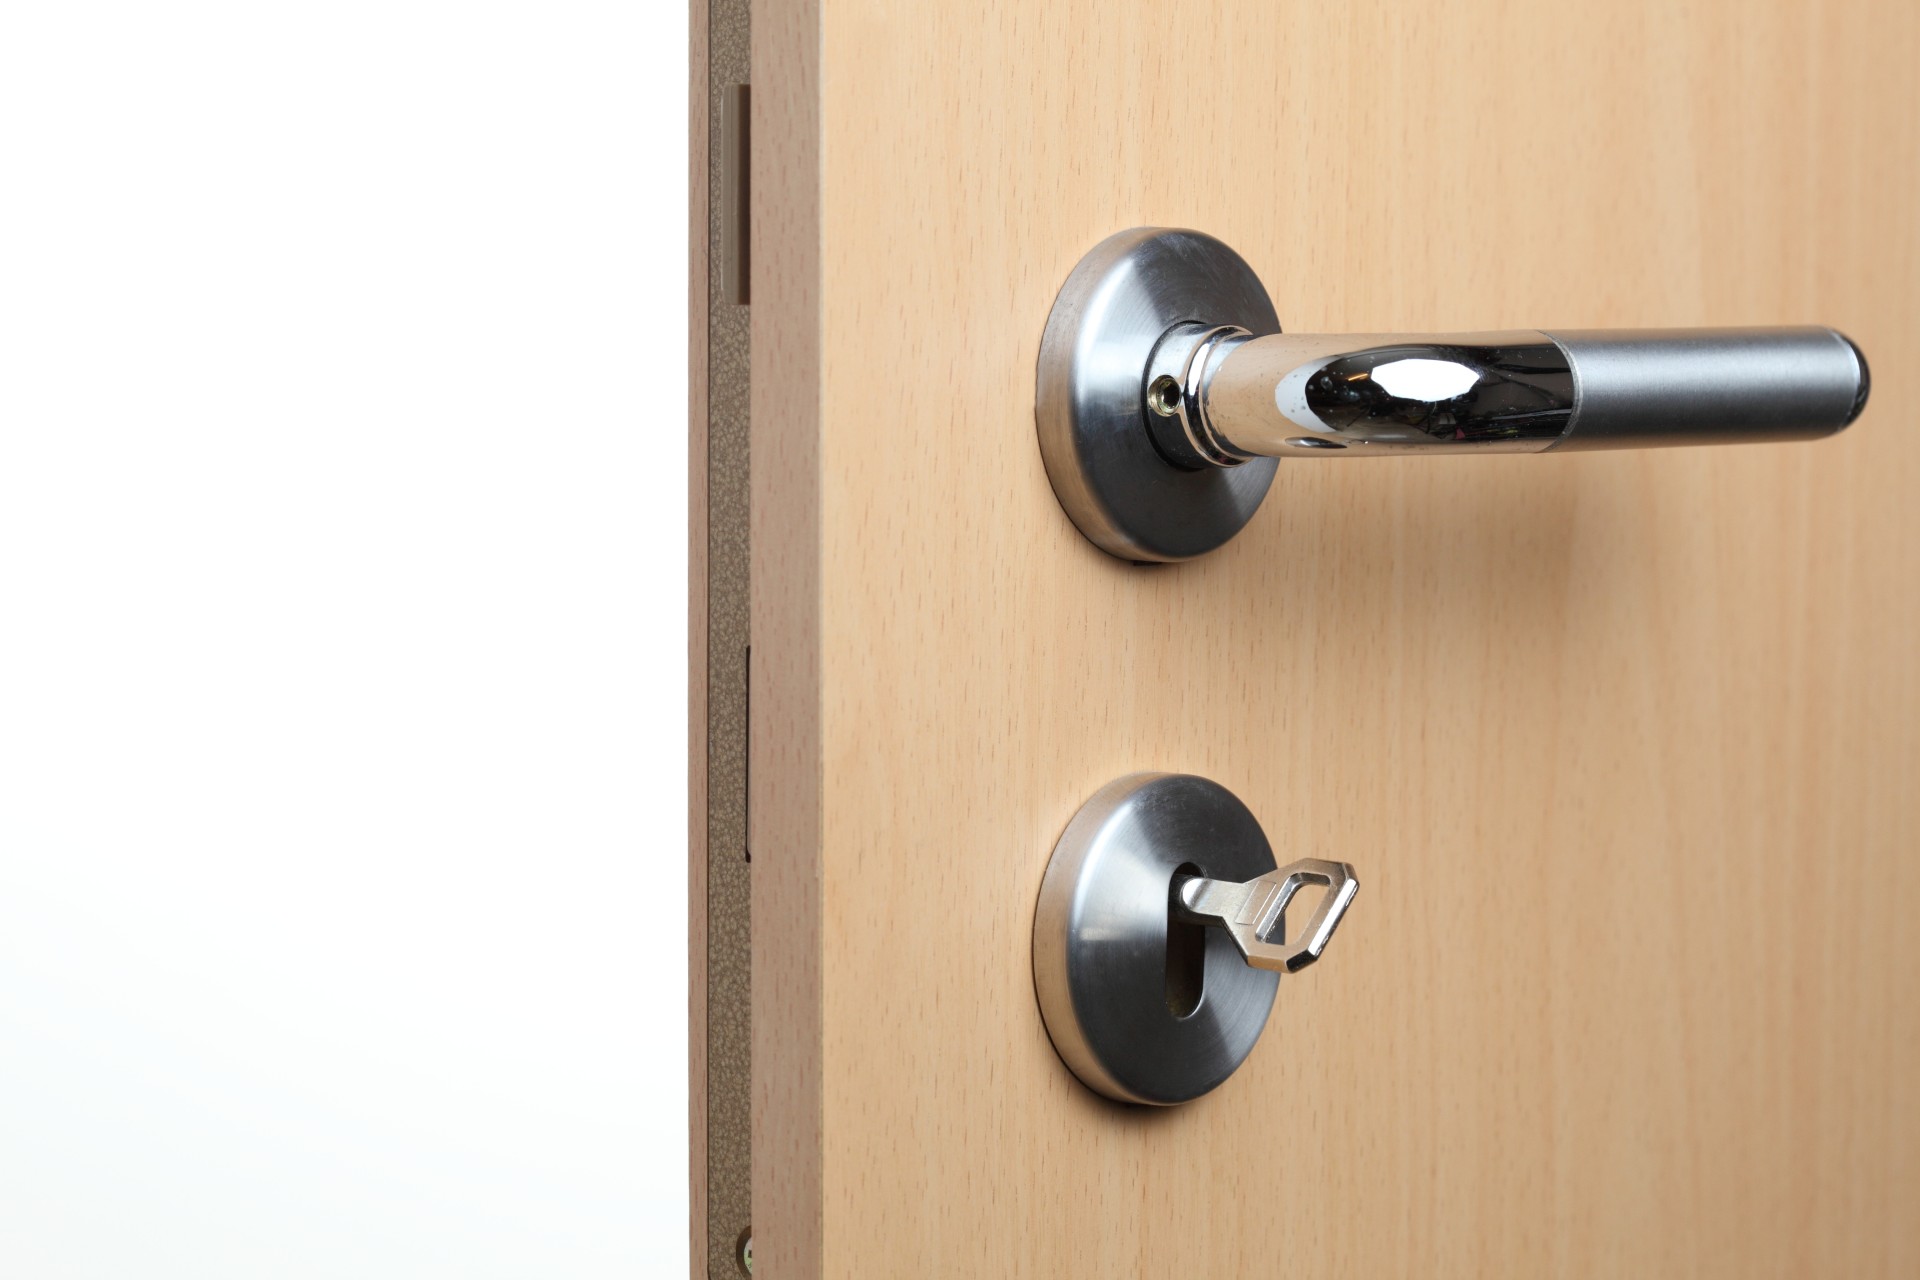 door handle and key in lock